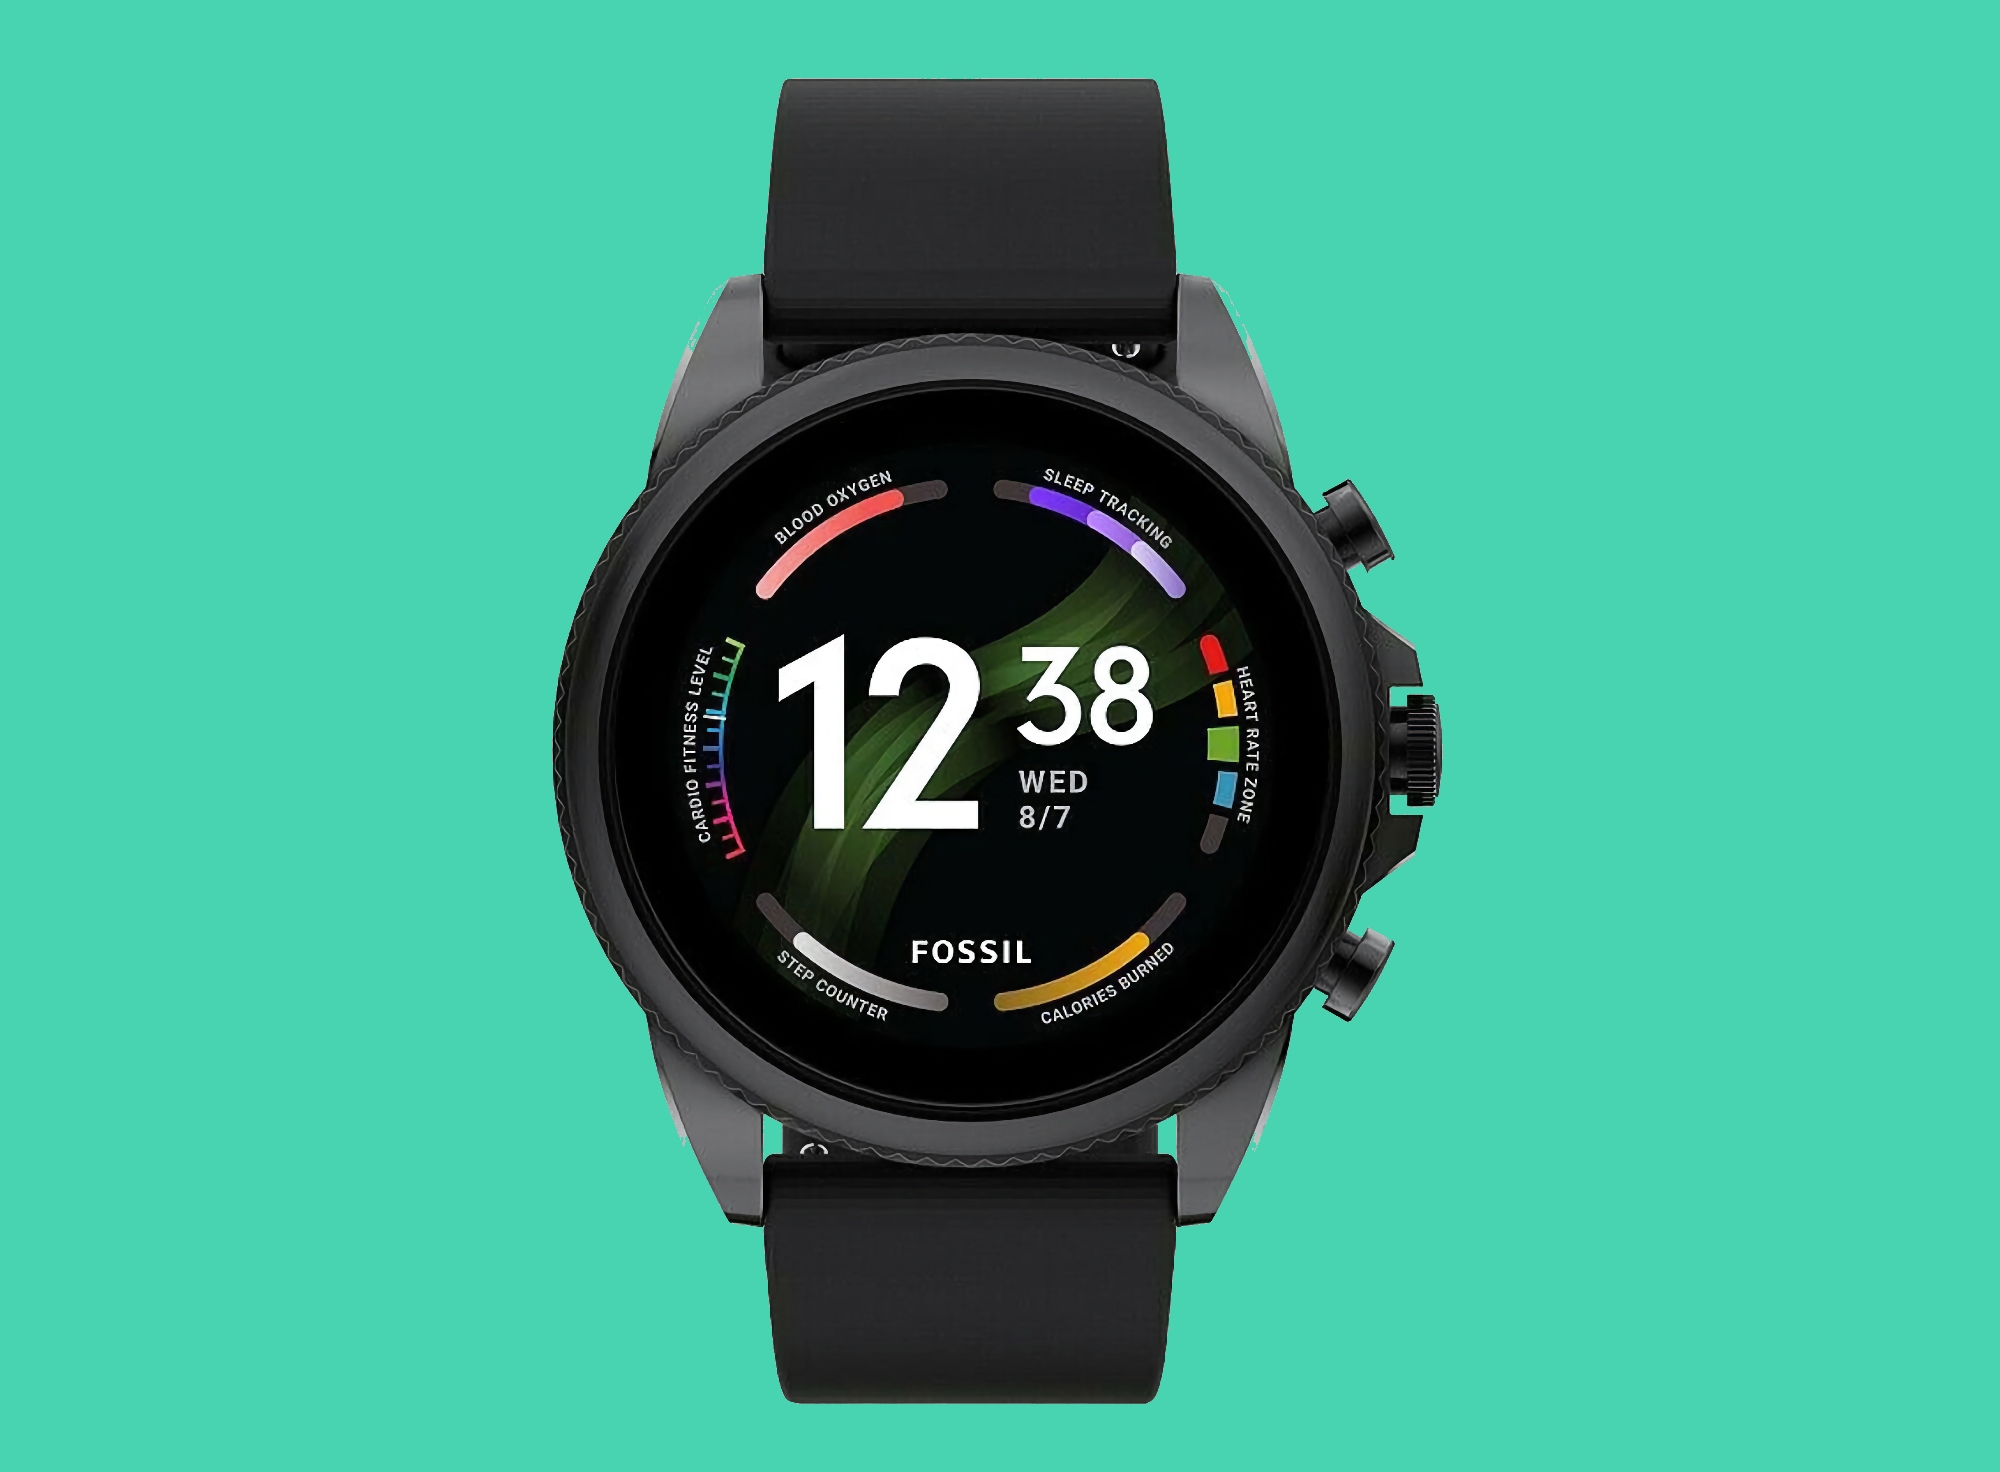 Fossil Gen 6 bei Amazon: Smartwatch mit 44-mm-Gehäuse, NFC und Wear OS an Bord für $151 Rabatt